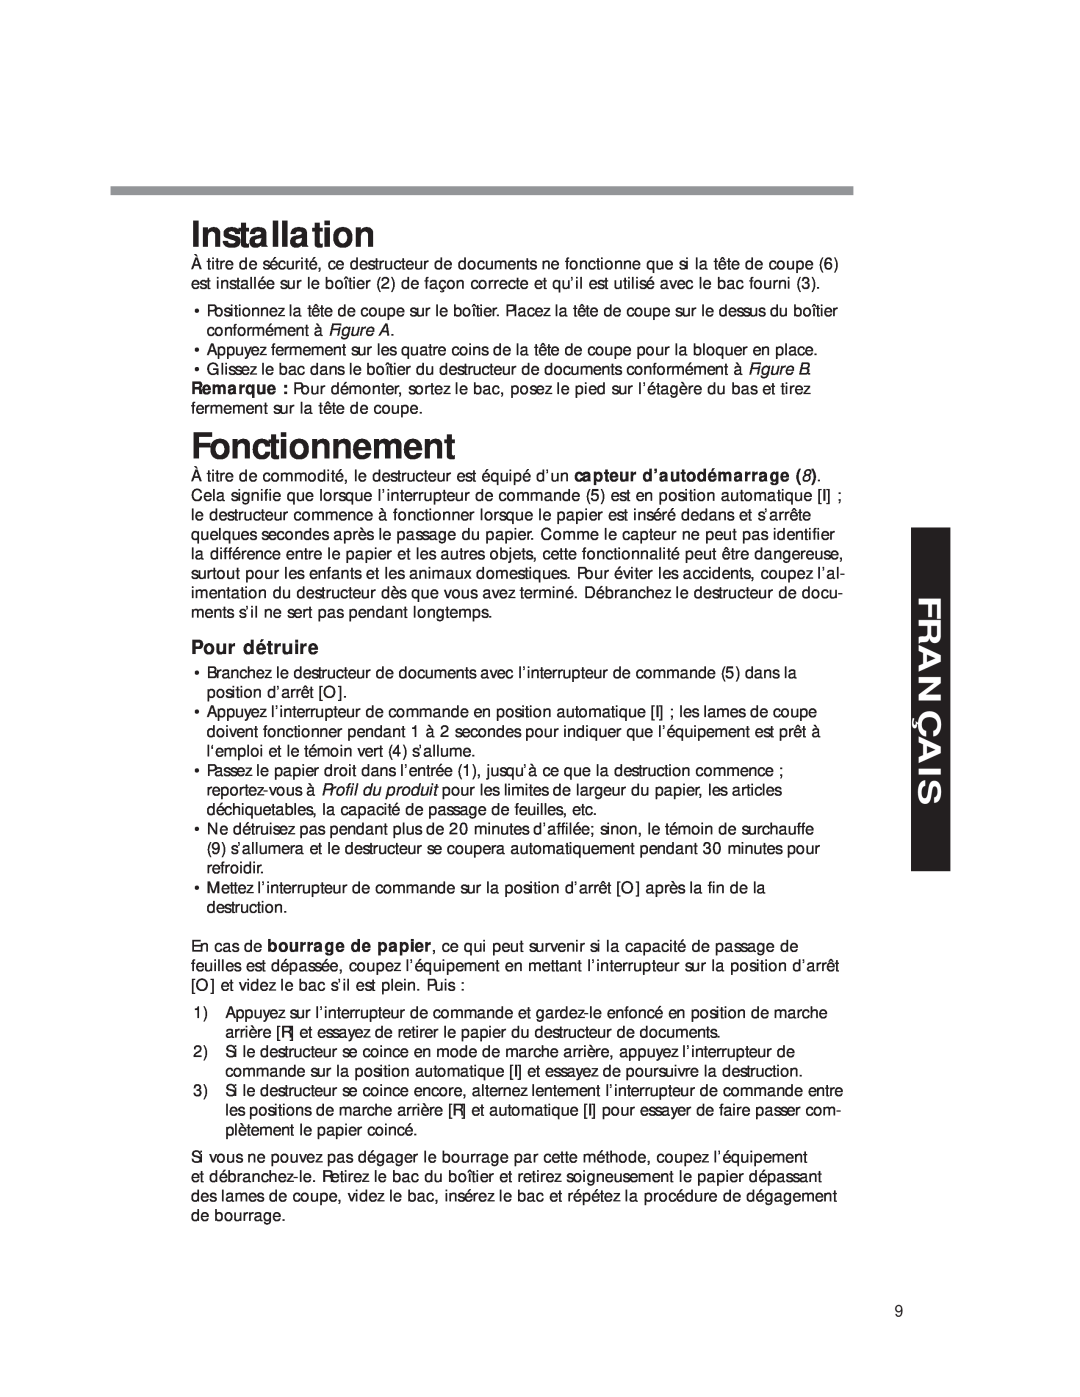 Fellowes DM8C manual Installation, Fonctionnement, Pour détruire, Français 